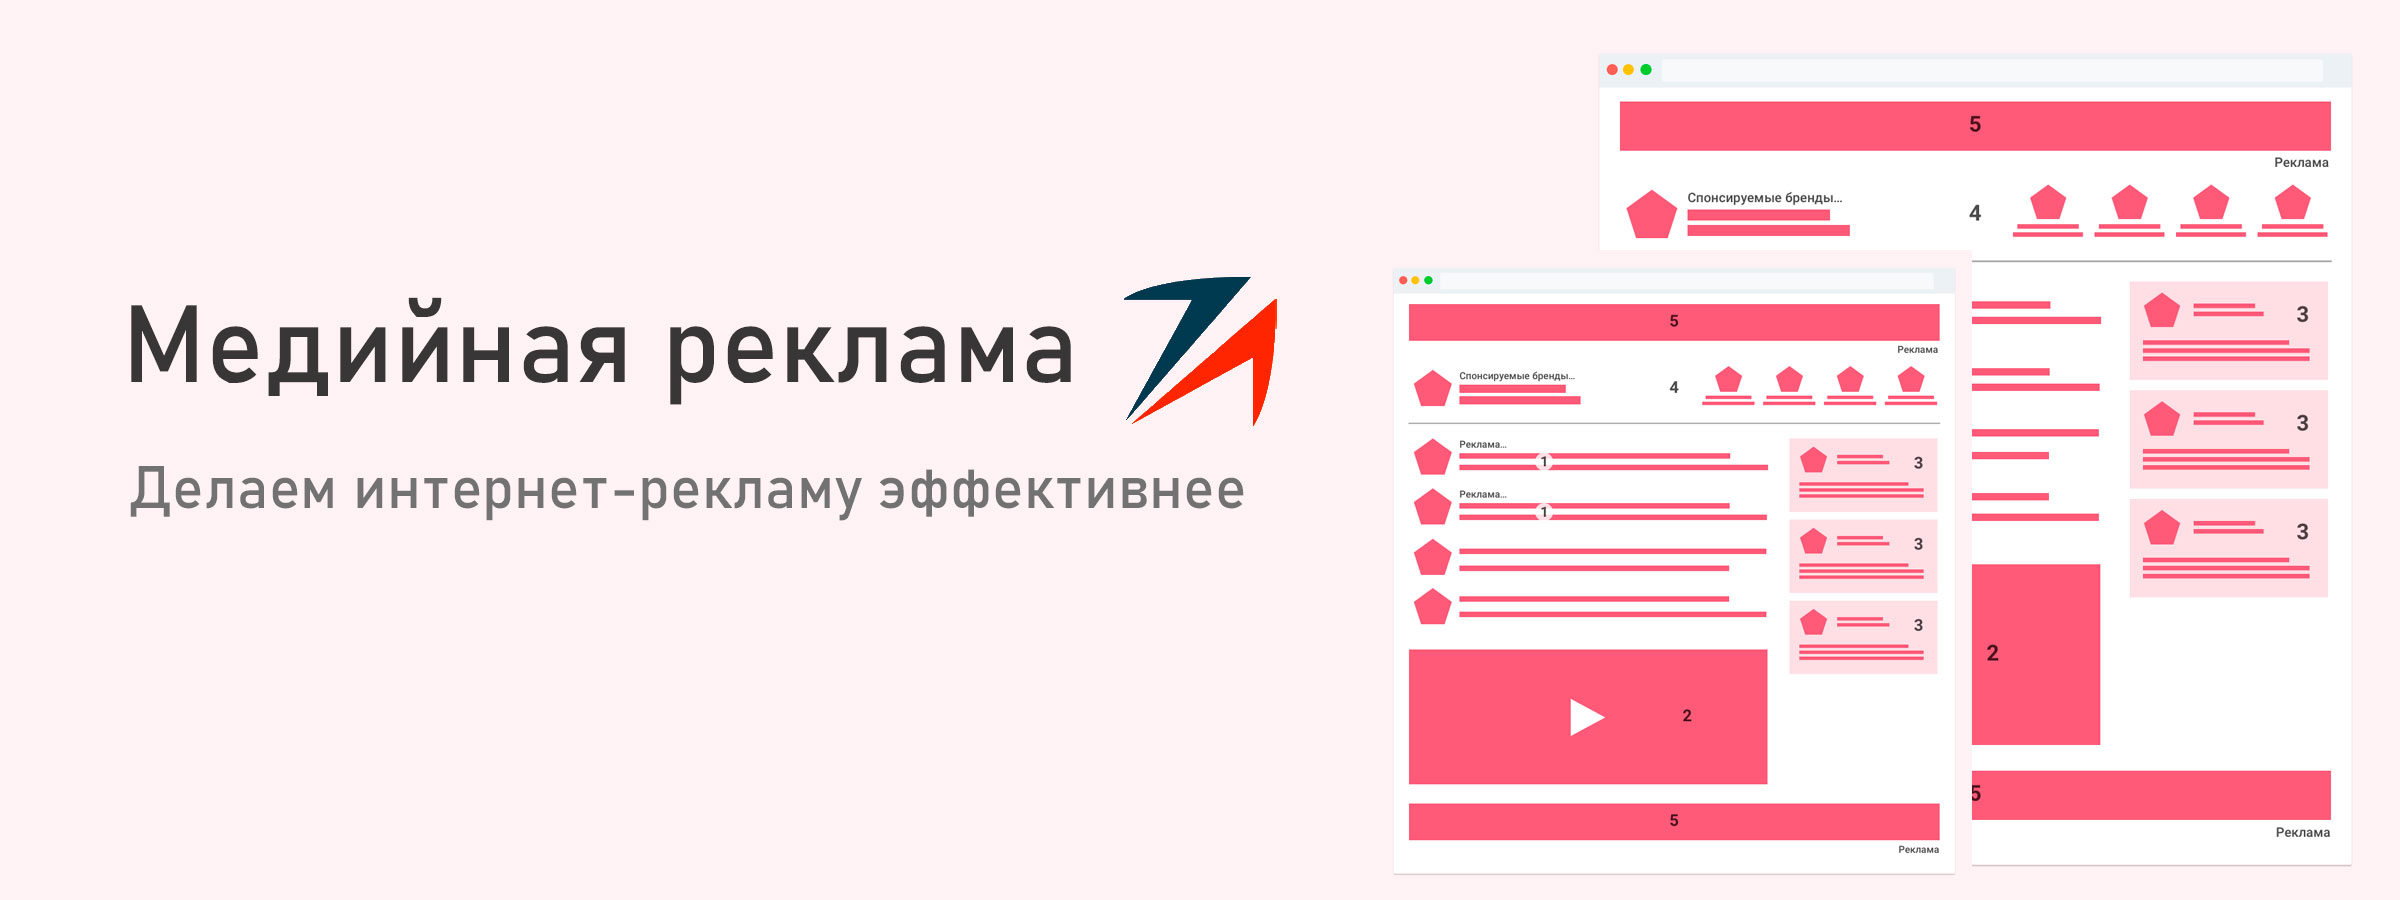 Медийная реклама Google, Yandex